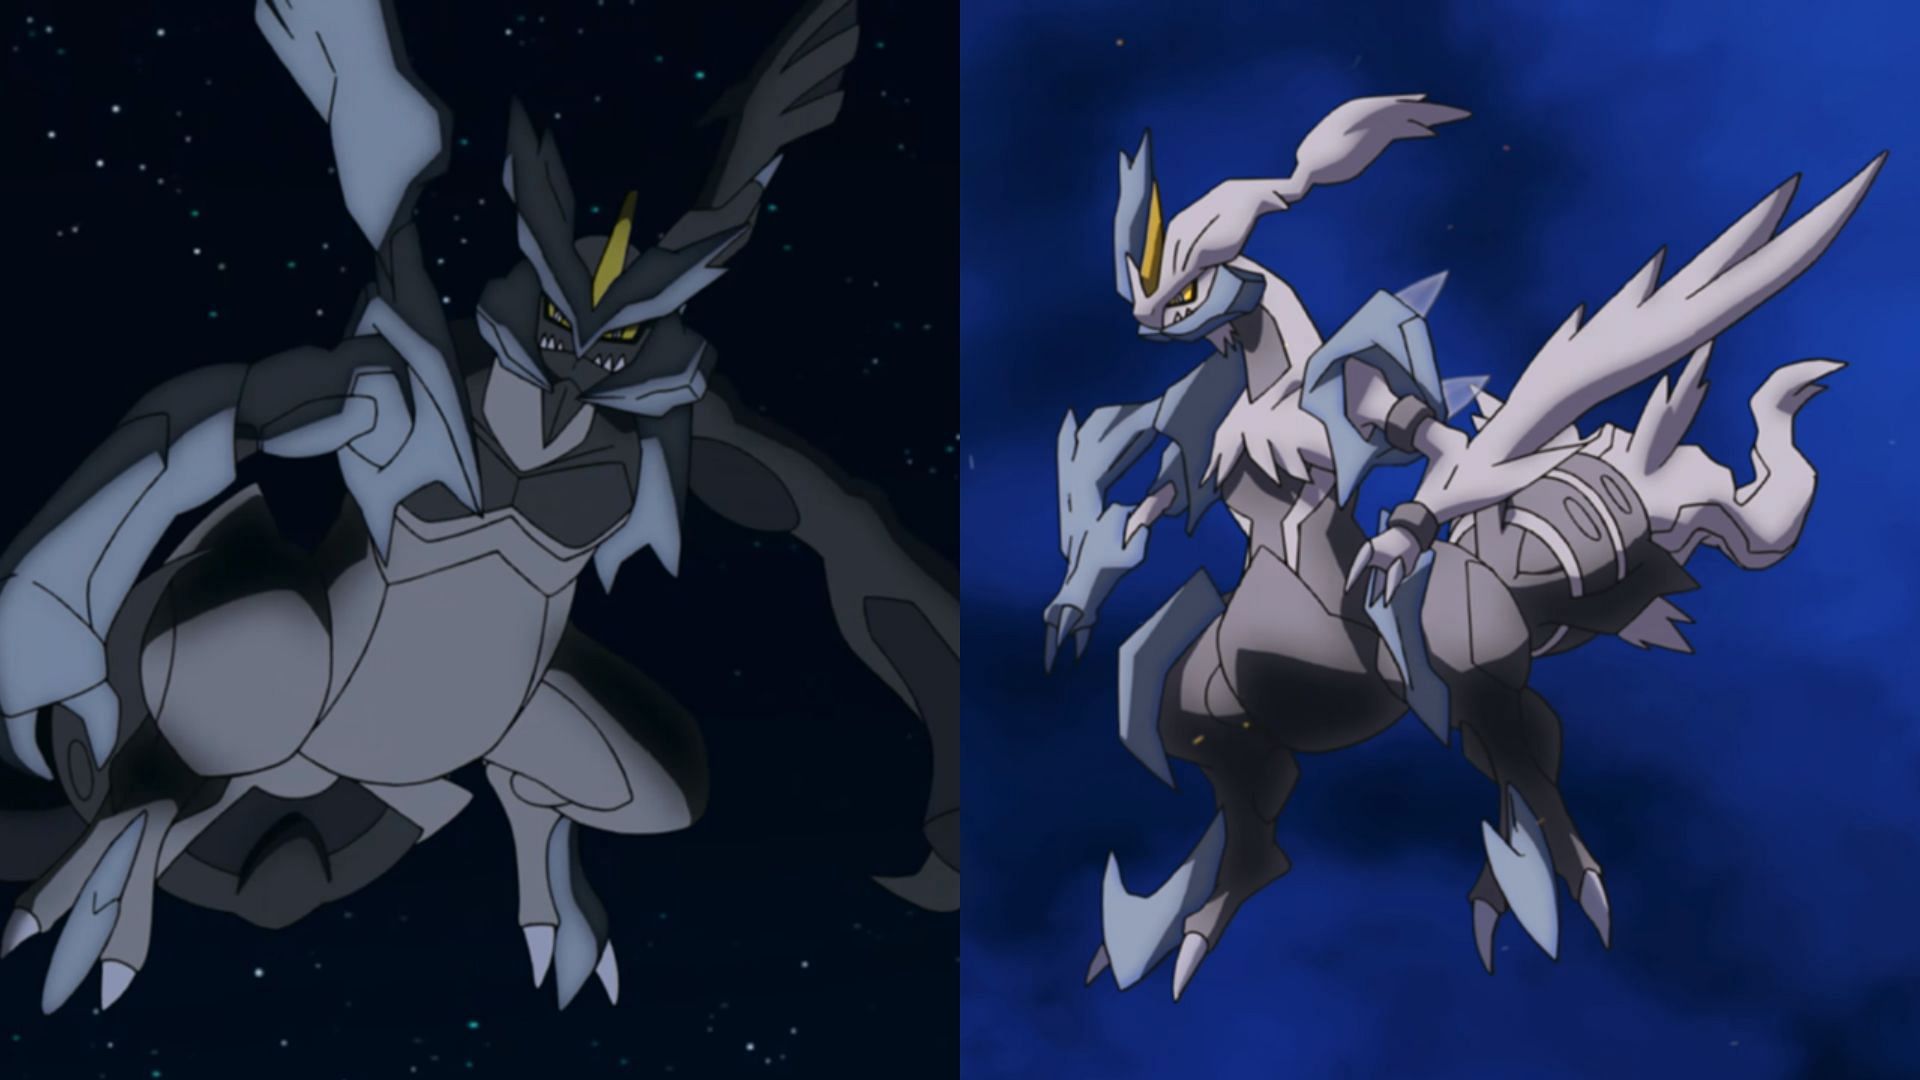 Fusioni di Kyurem nell'anime (Immagine tramite The Pokemon Company)